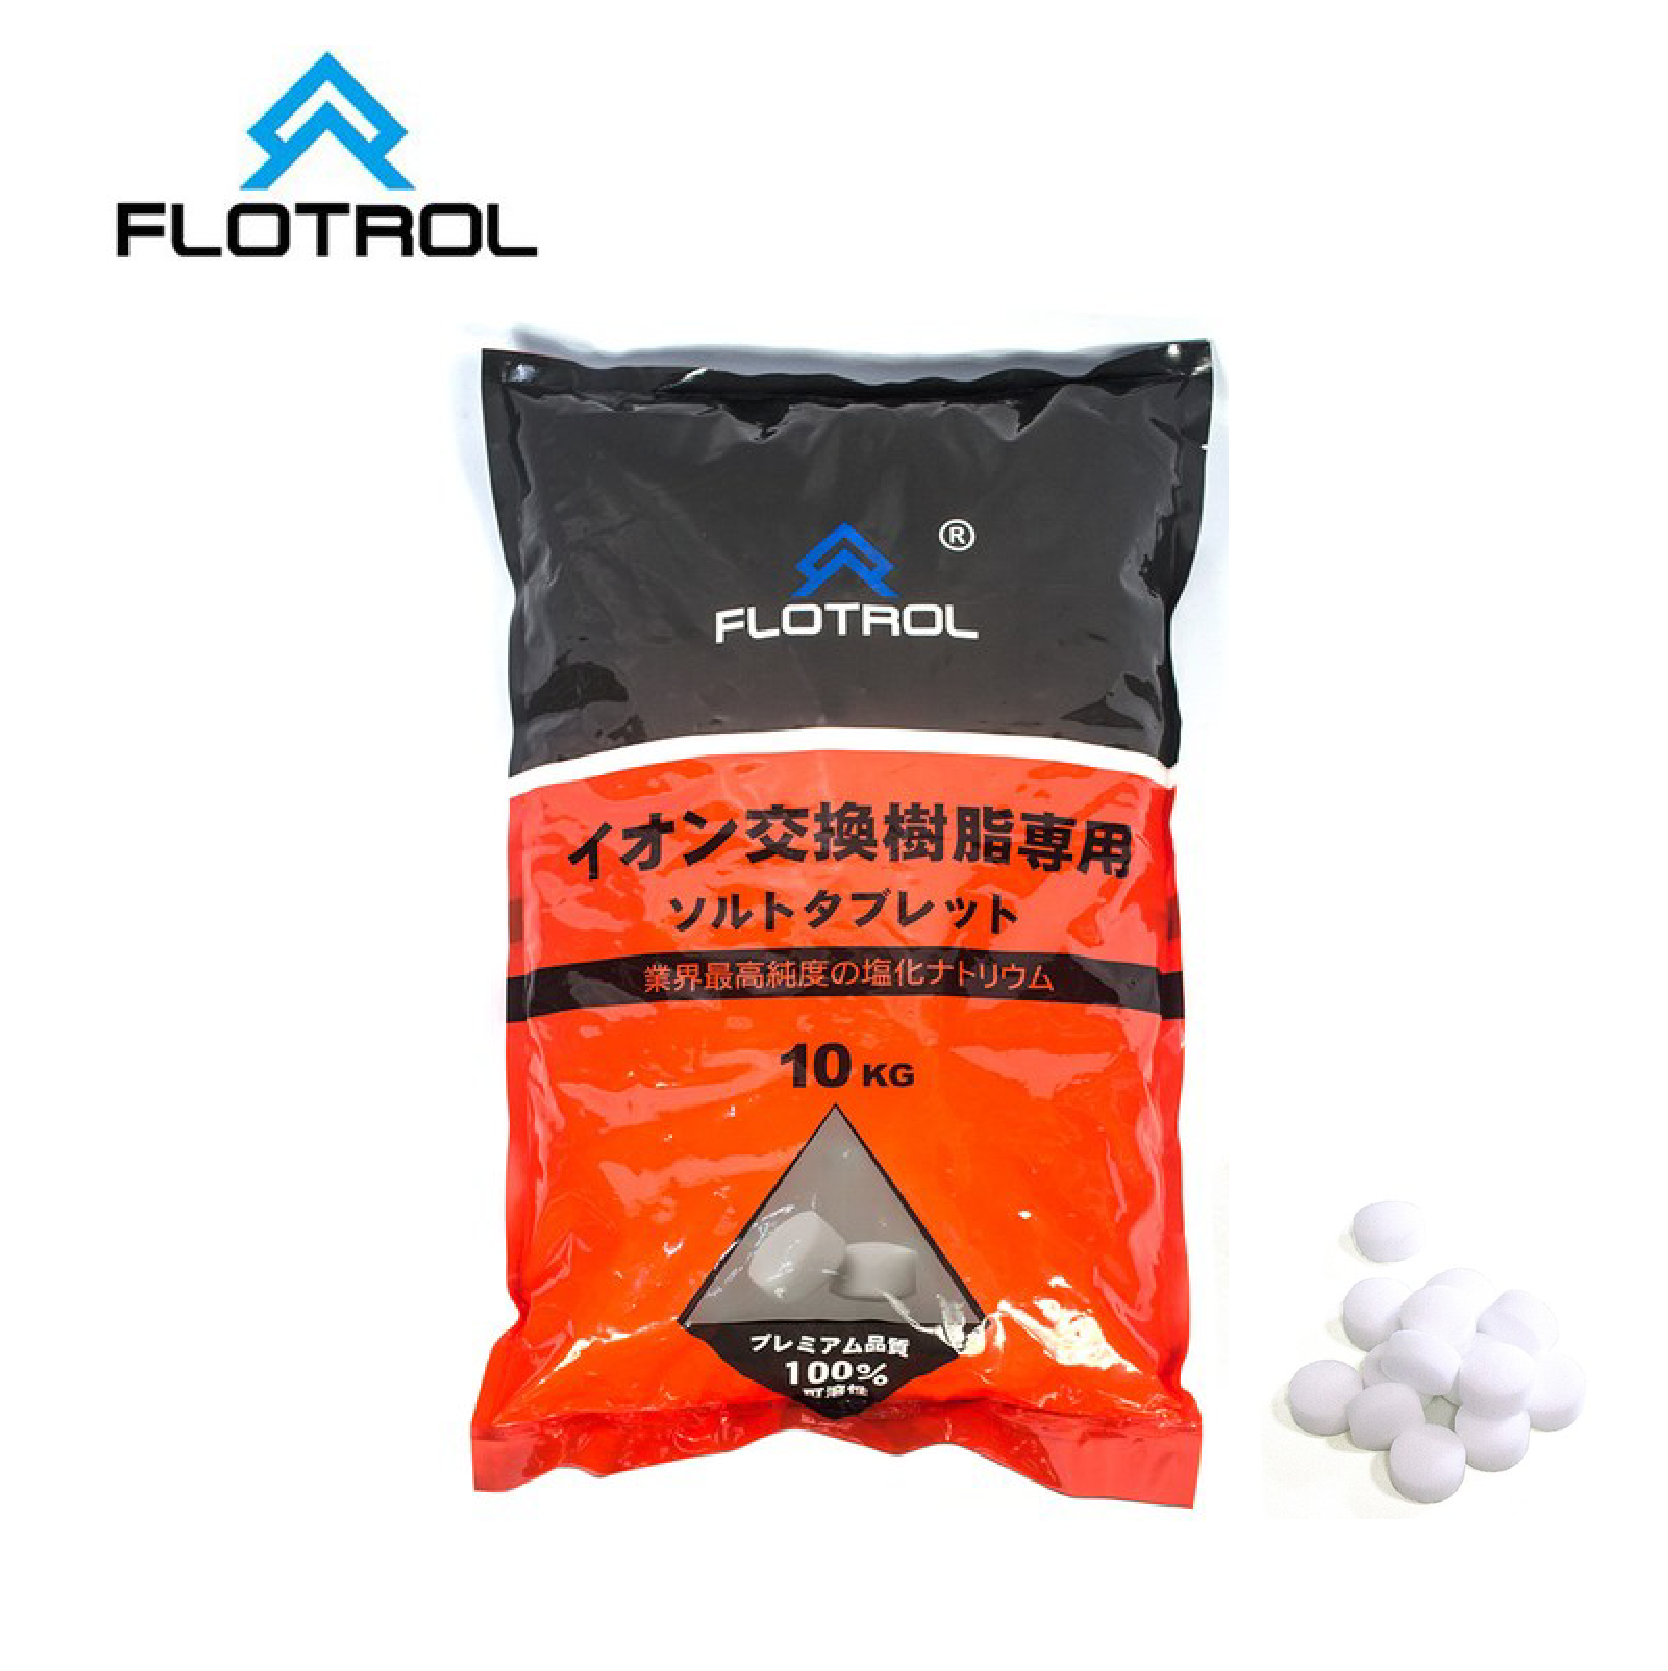 FLOTROL 高純度交換樹脂專用鹽錠 ( 單包-10公斤 )買一送一